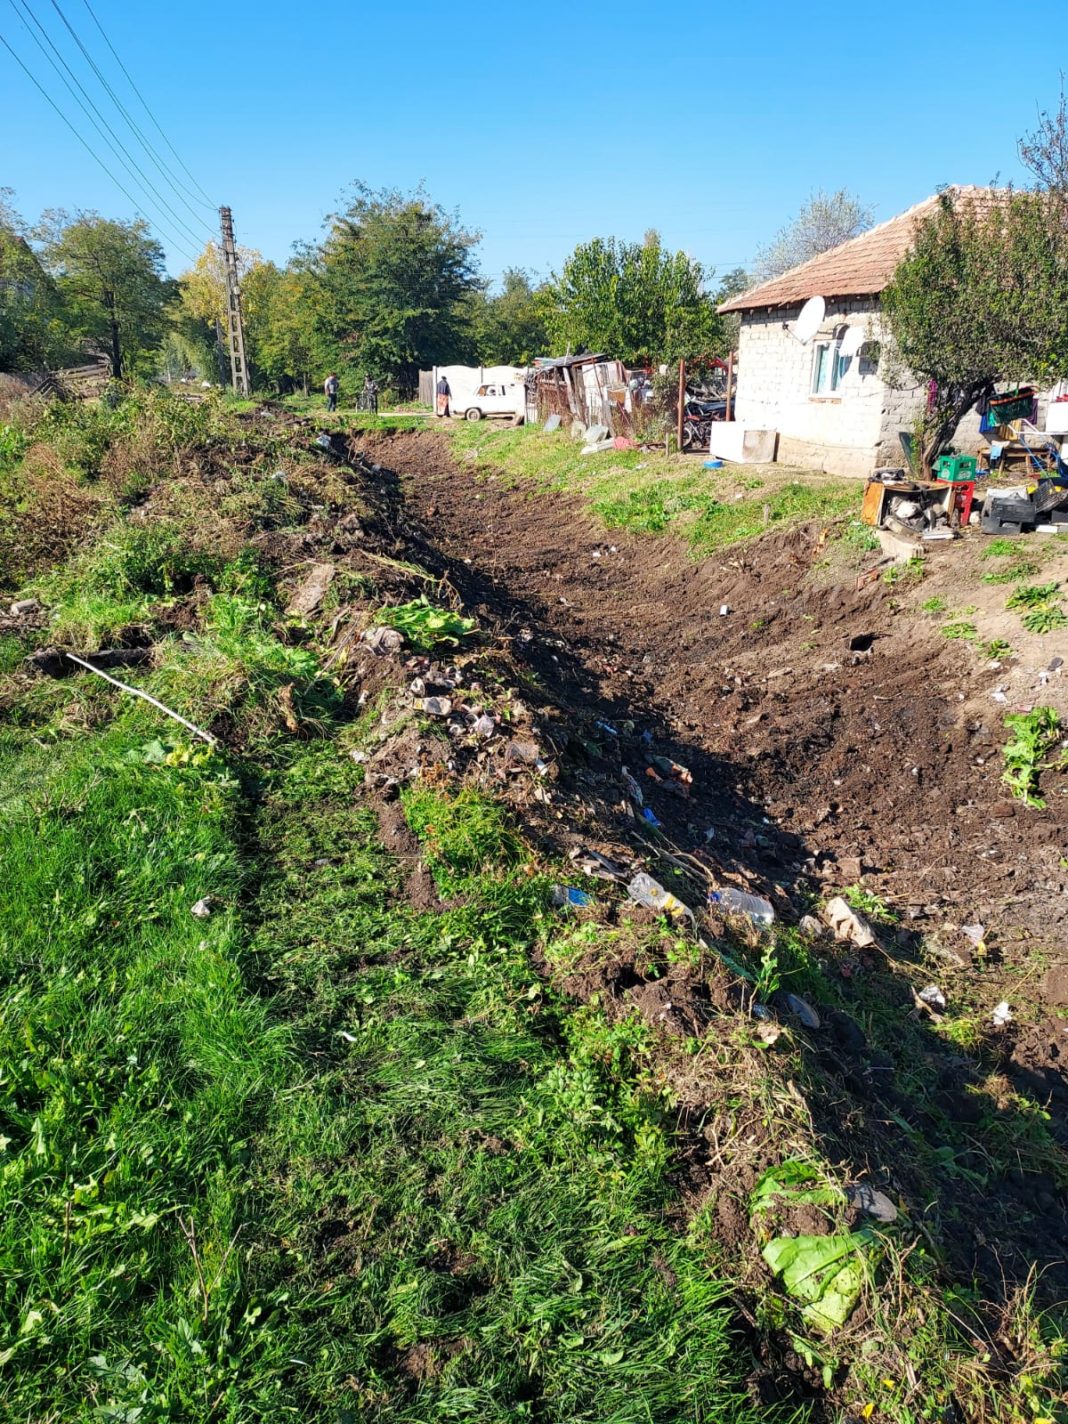 Autorităților locale și riveranilor le revine obligația să-și curețe și să-și întrețină permanent șanțurile și rigolele pentru asigurarea scurgerii apelor pluviale.